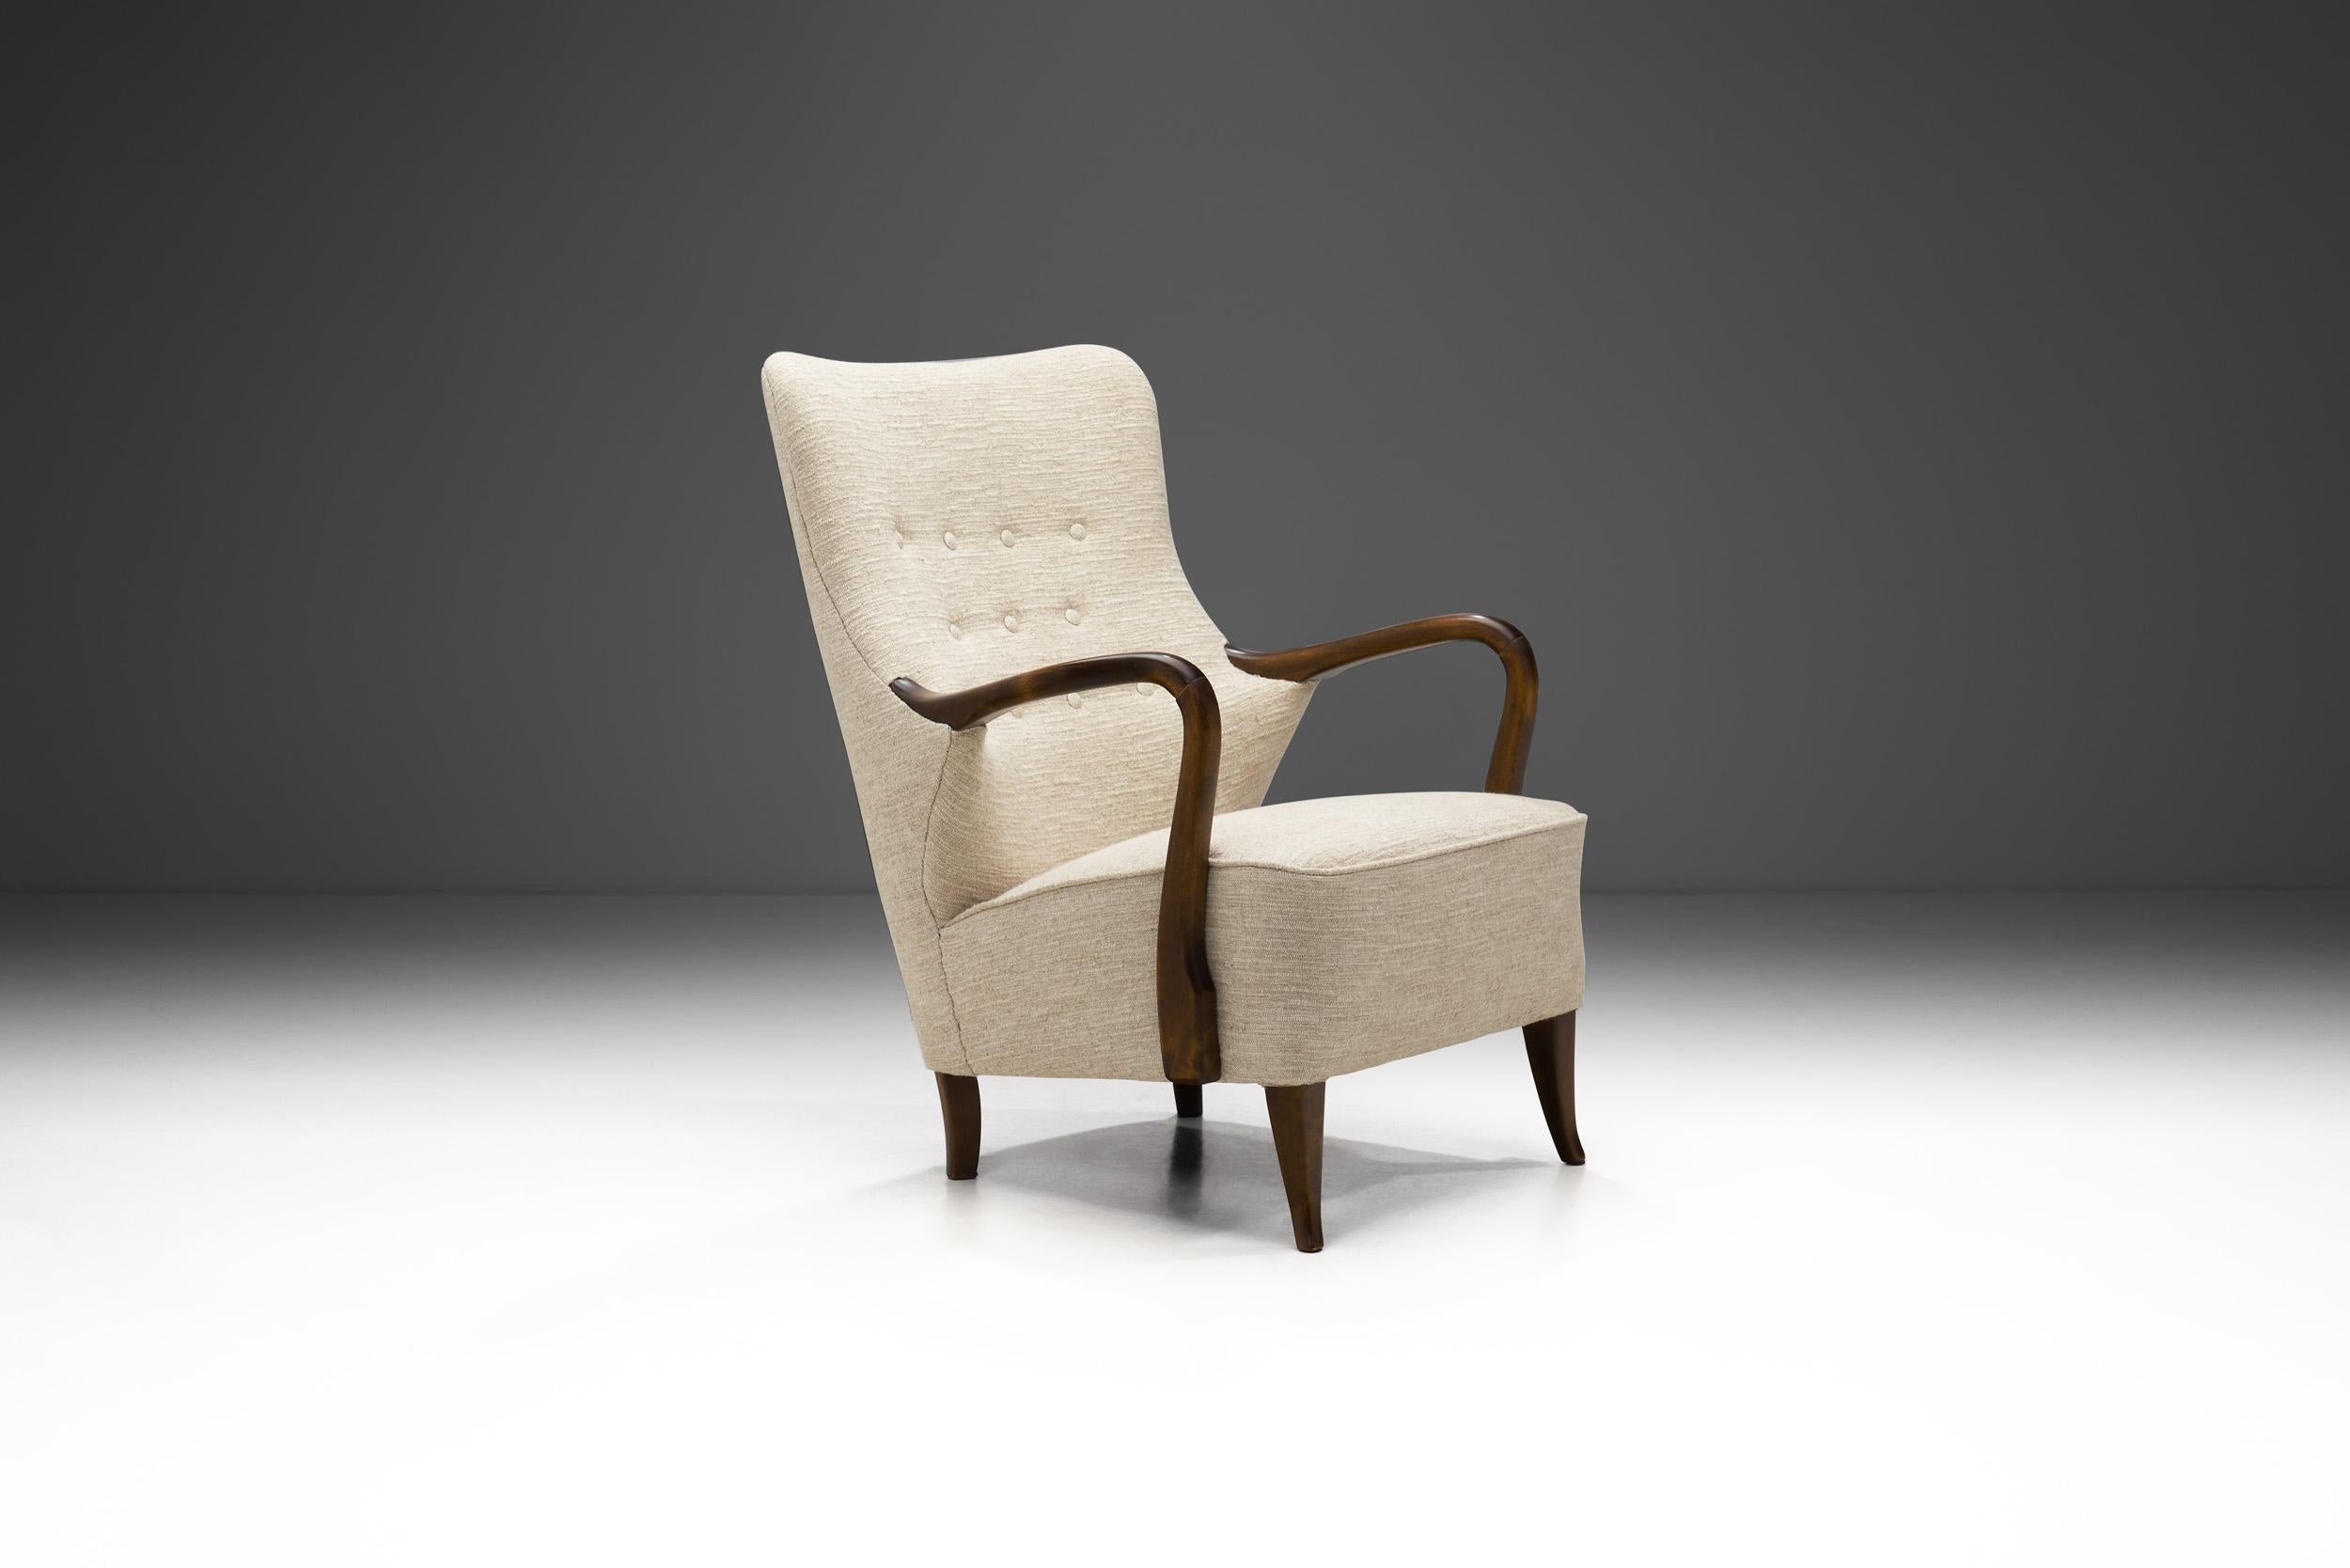 1940s armchair